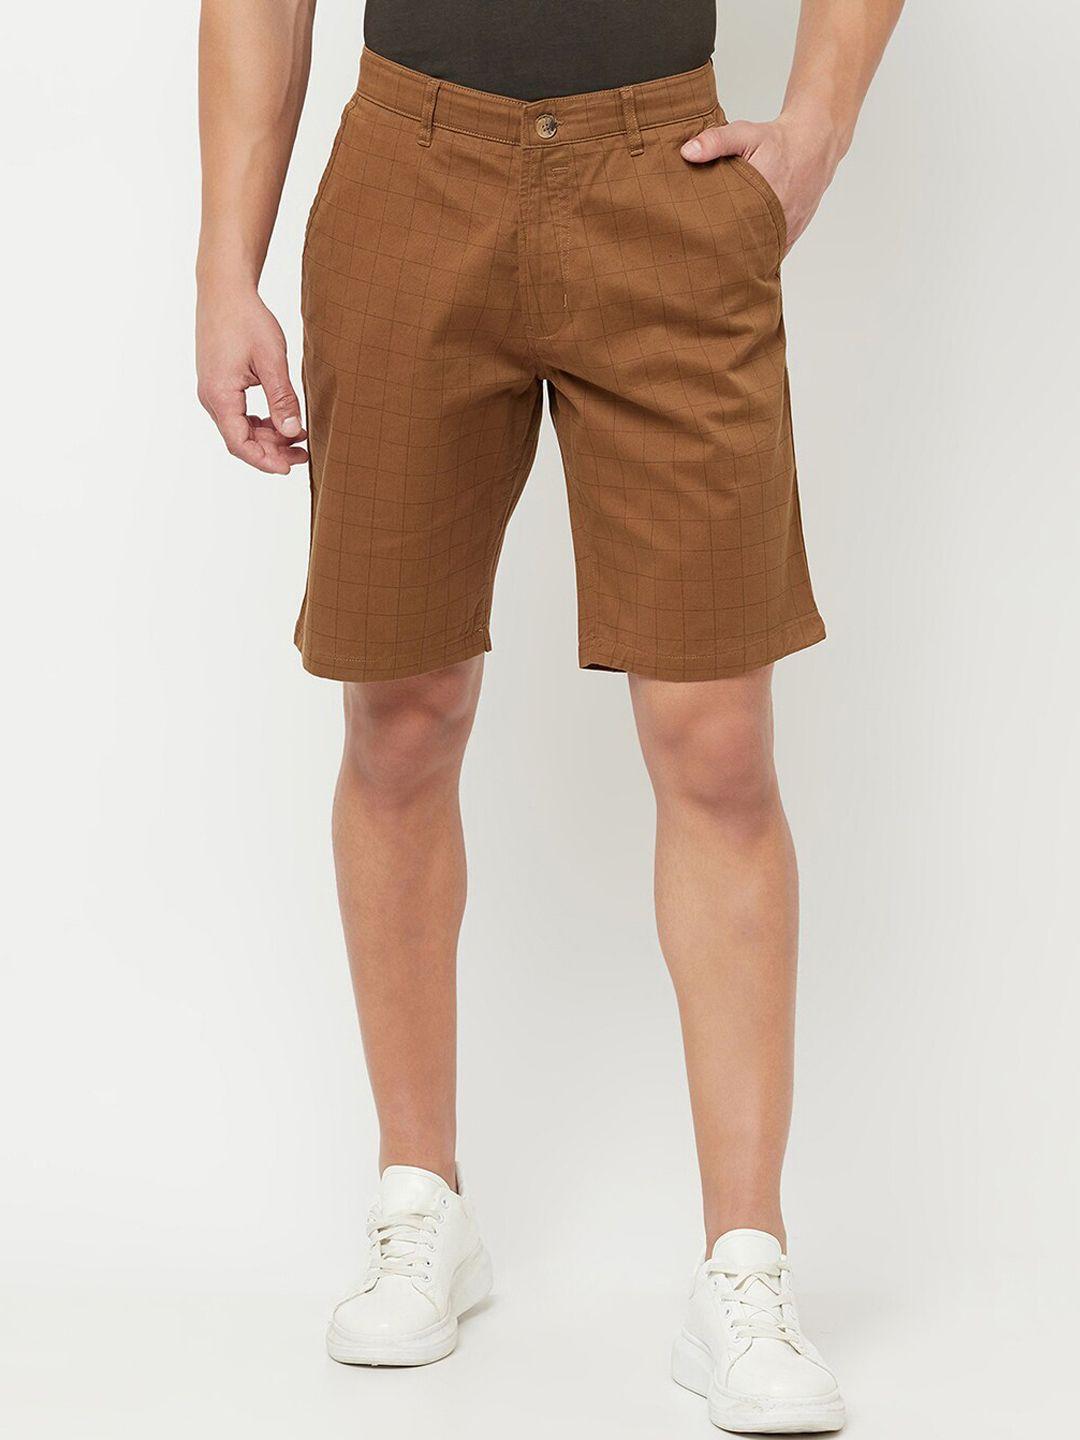 cantabil men brown chino shorts